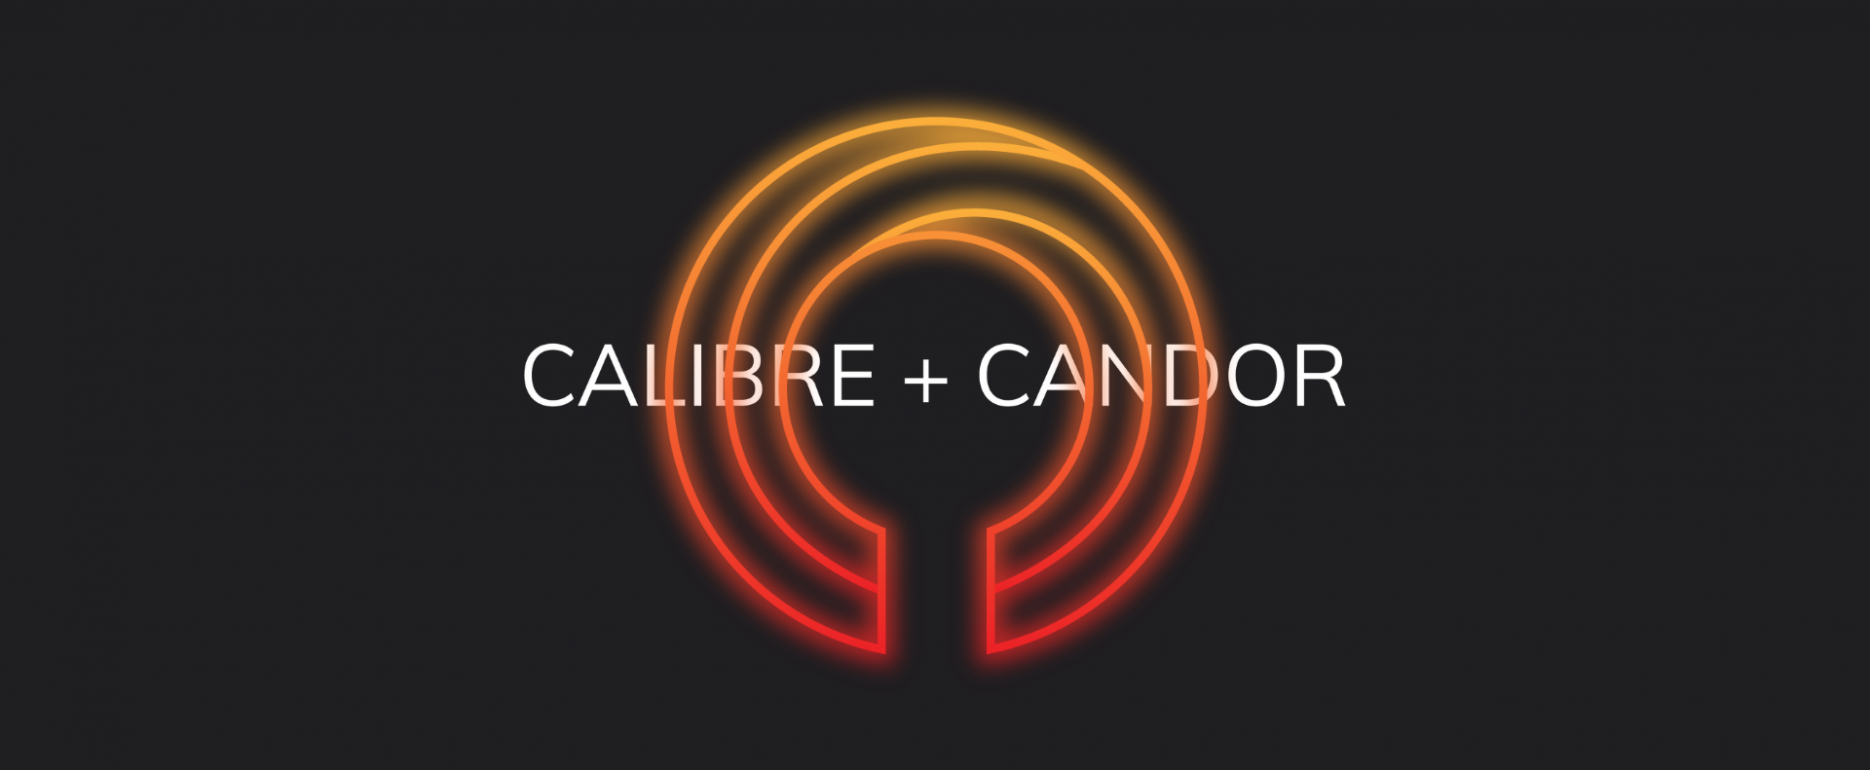 Calibre + Candor Creative video